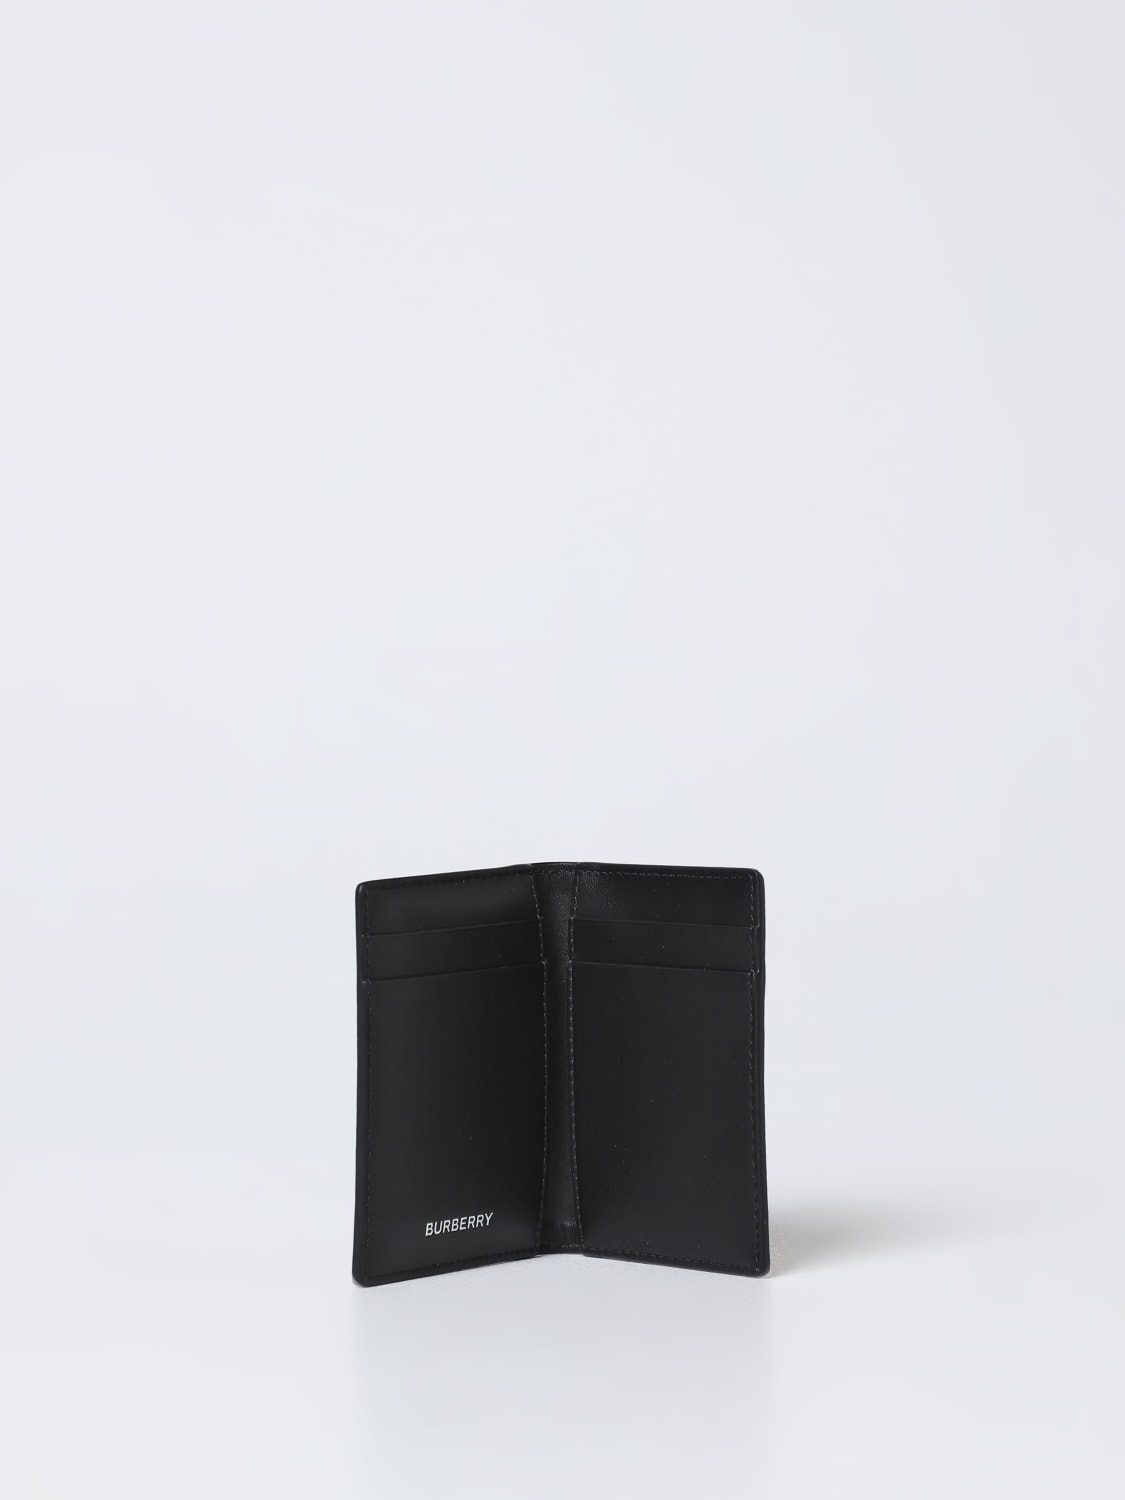 Beige/black cardholder